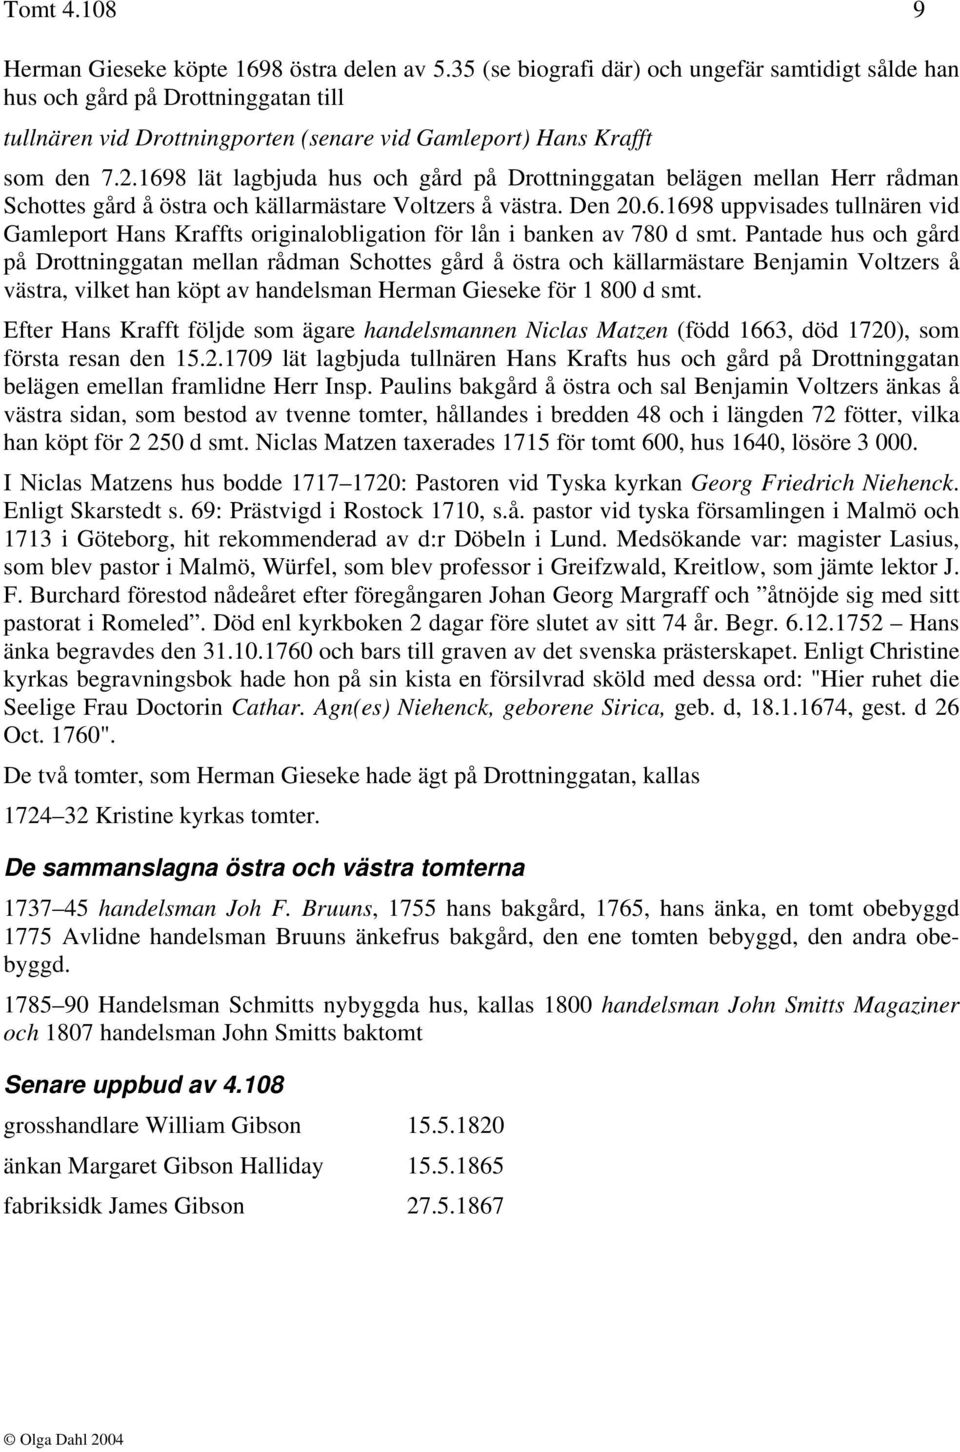 1698 lät lagbjuda hus och gård på Drottninggatan belägen mellan Herr rådman Schottes gård å östra och källarmästare Voltzers å västra. Den 20.6.1698 uppvisades tullnären vid Gamleport Hans Kraffts originalobligation för lån i banken av 780 d smt.